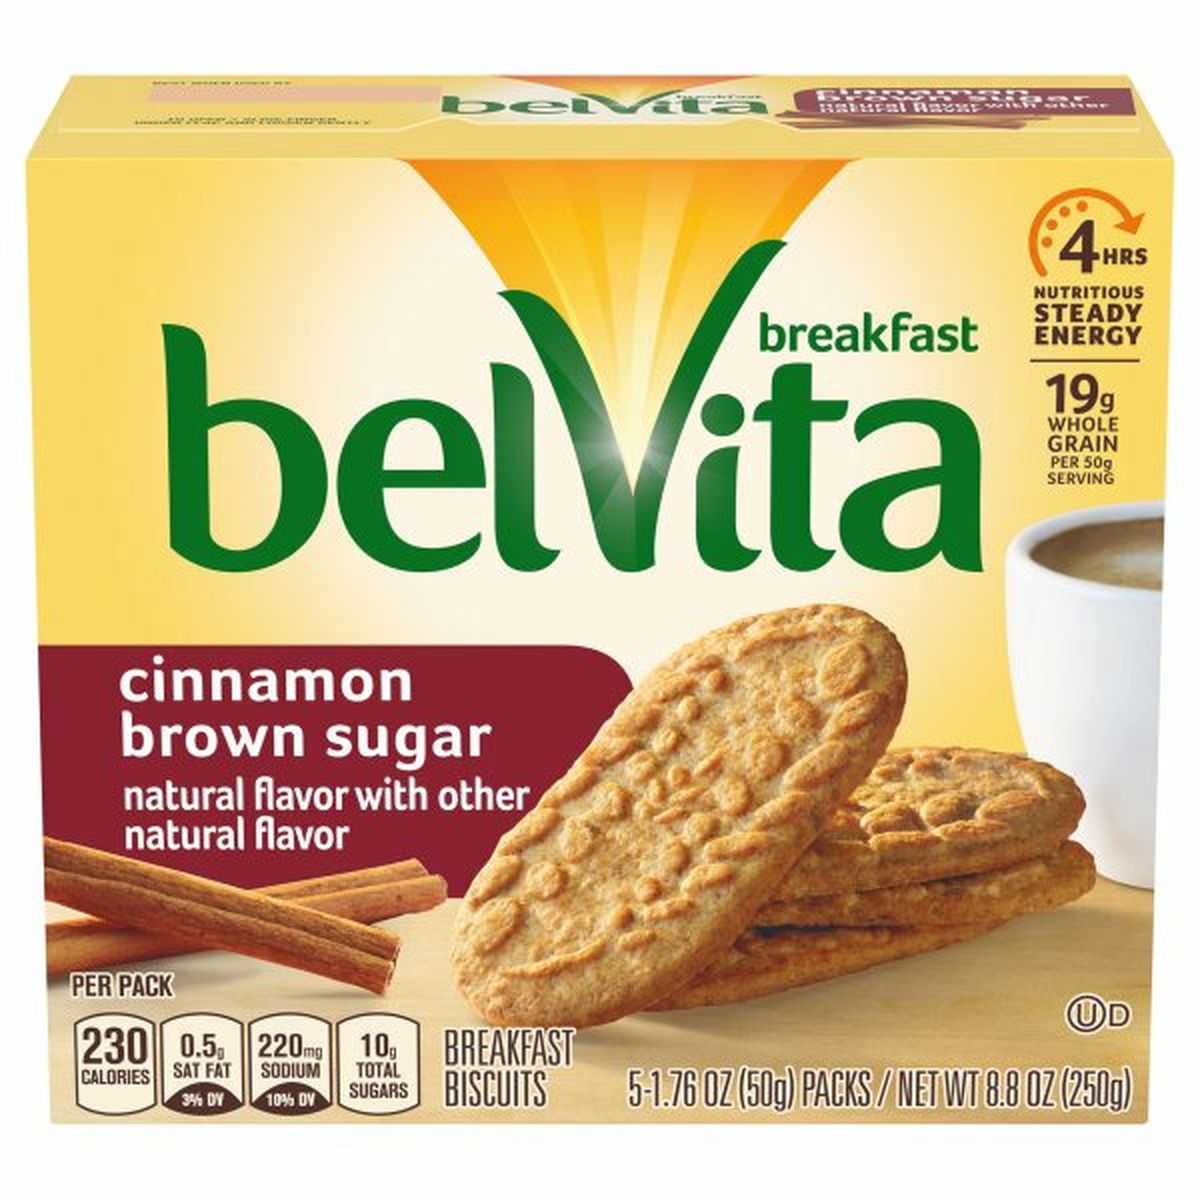 Calories in belVita Breakfast Biscuits, Cinnamon Brown Sugar